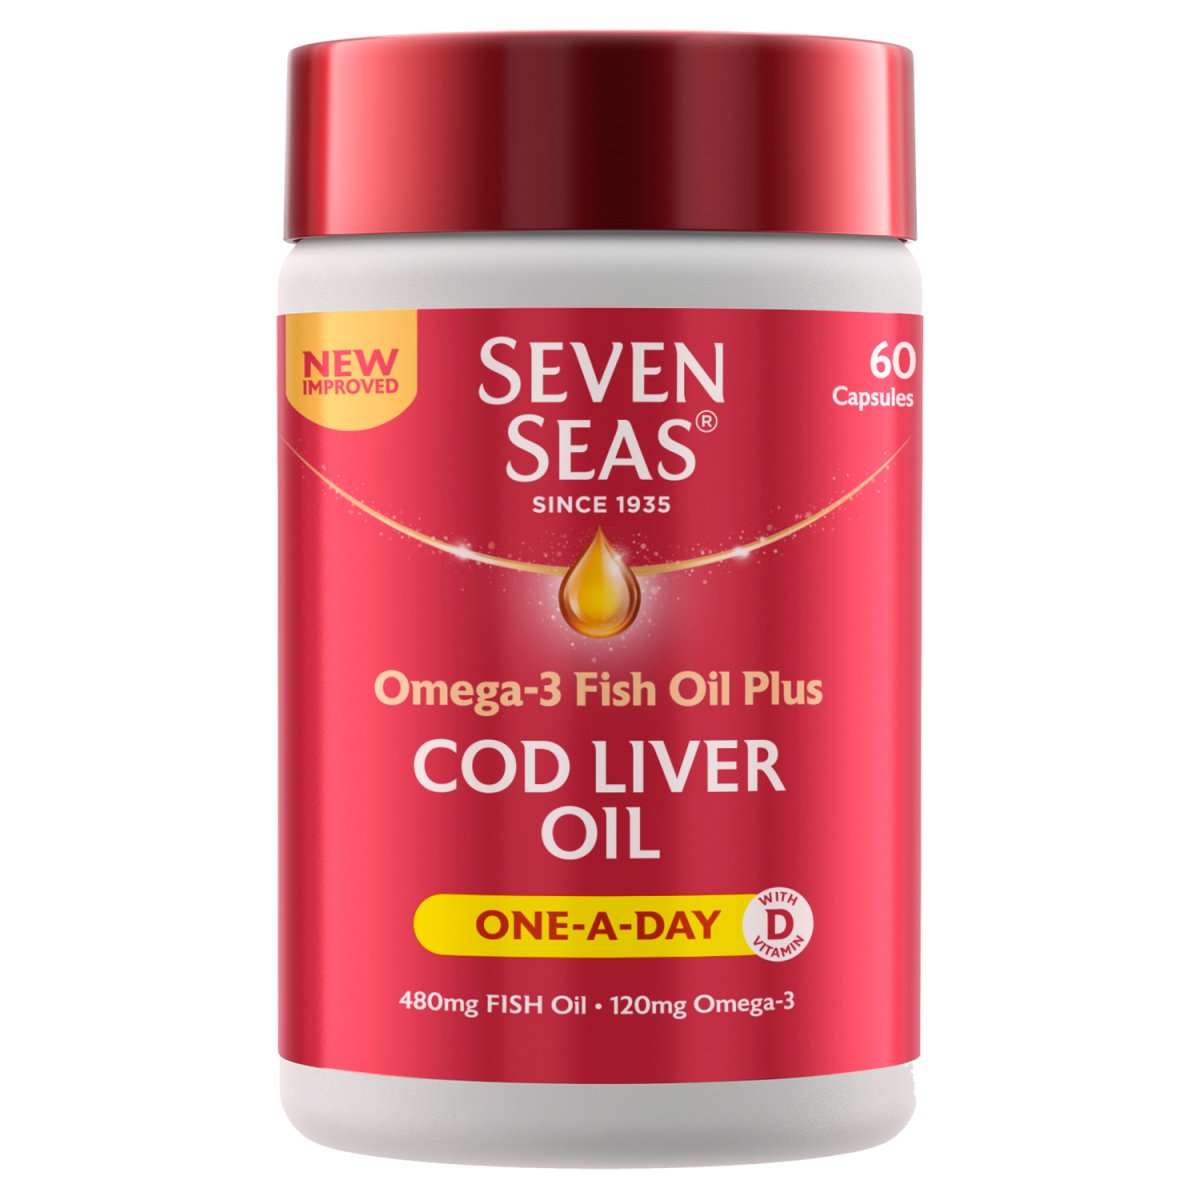 Seven Seas Cod Liver Oil 1 A Day Capsule 60S - Intamarque - Wholesale 0045879002304